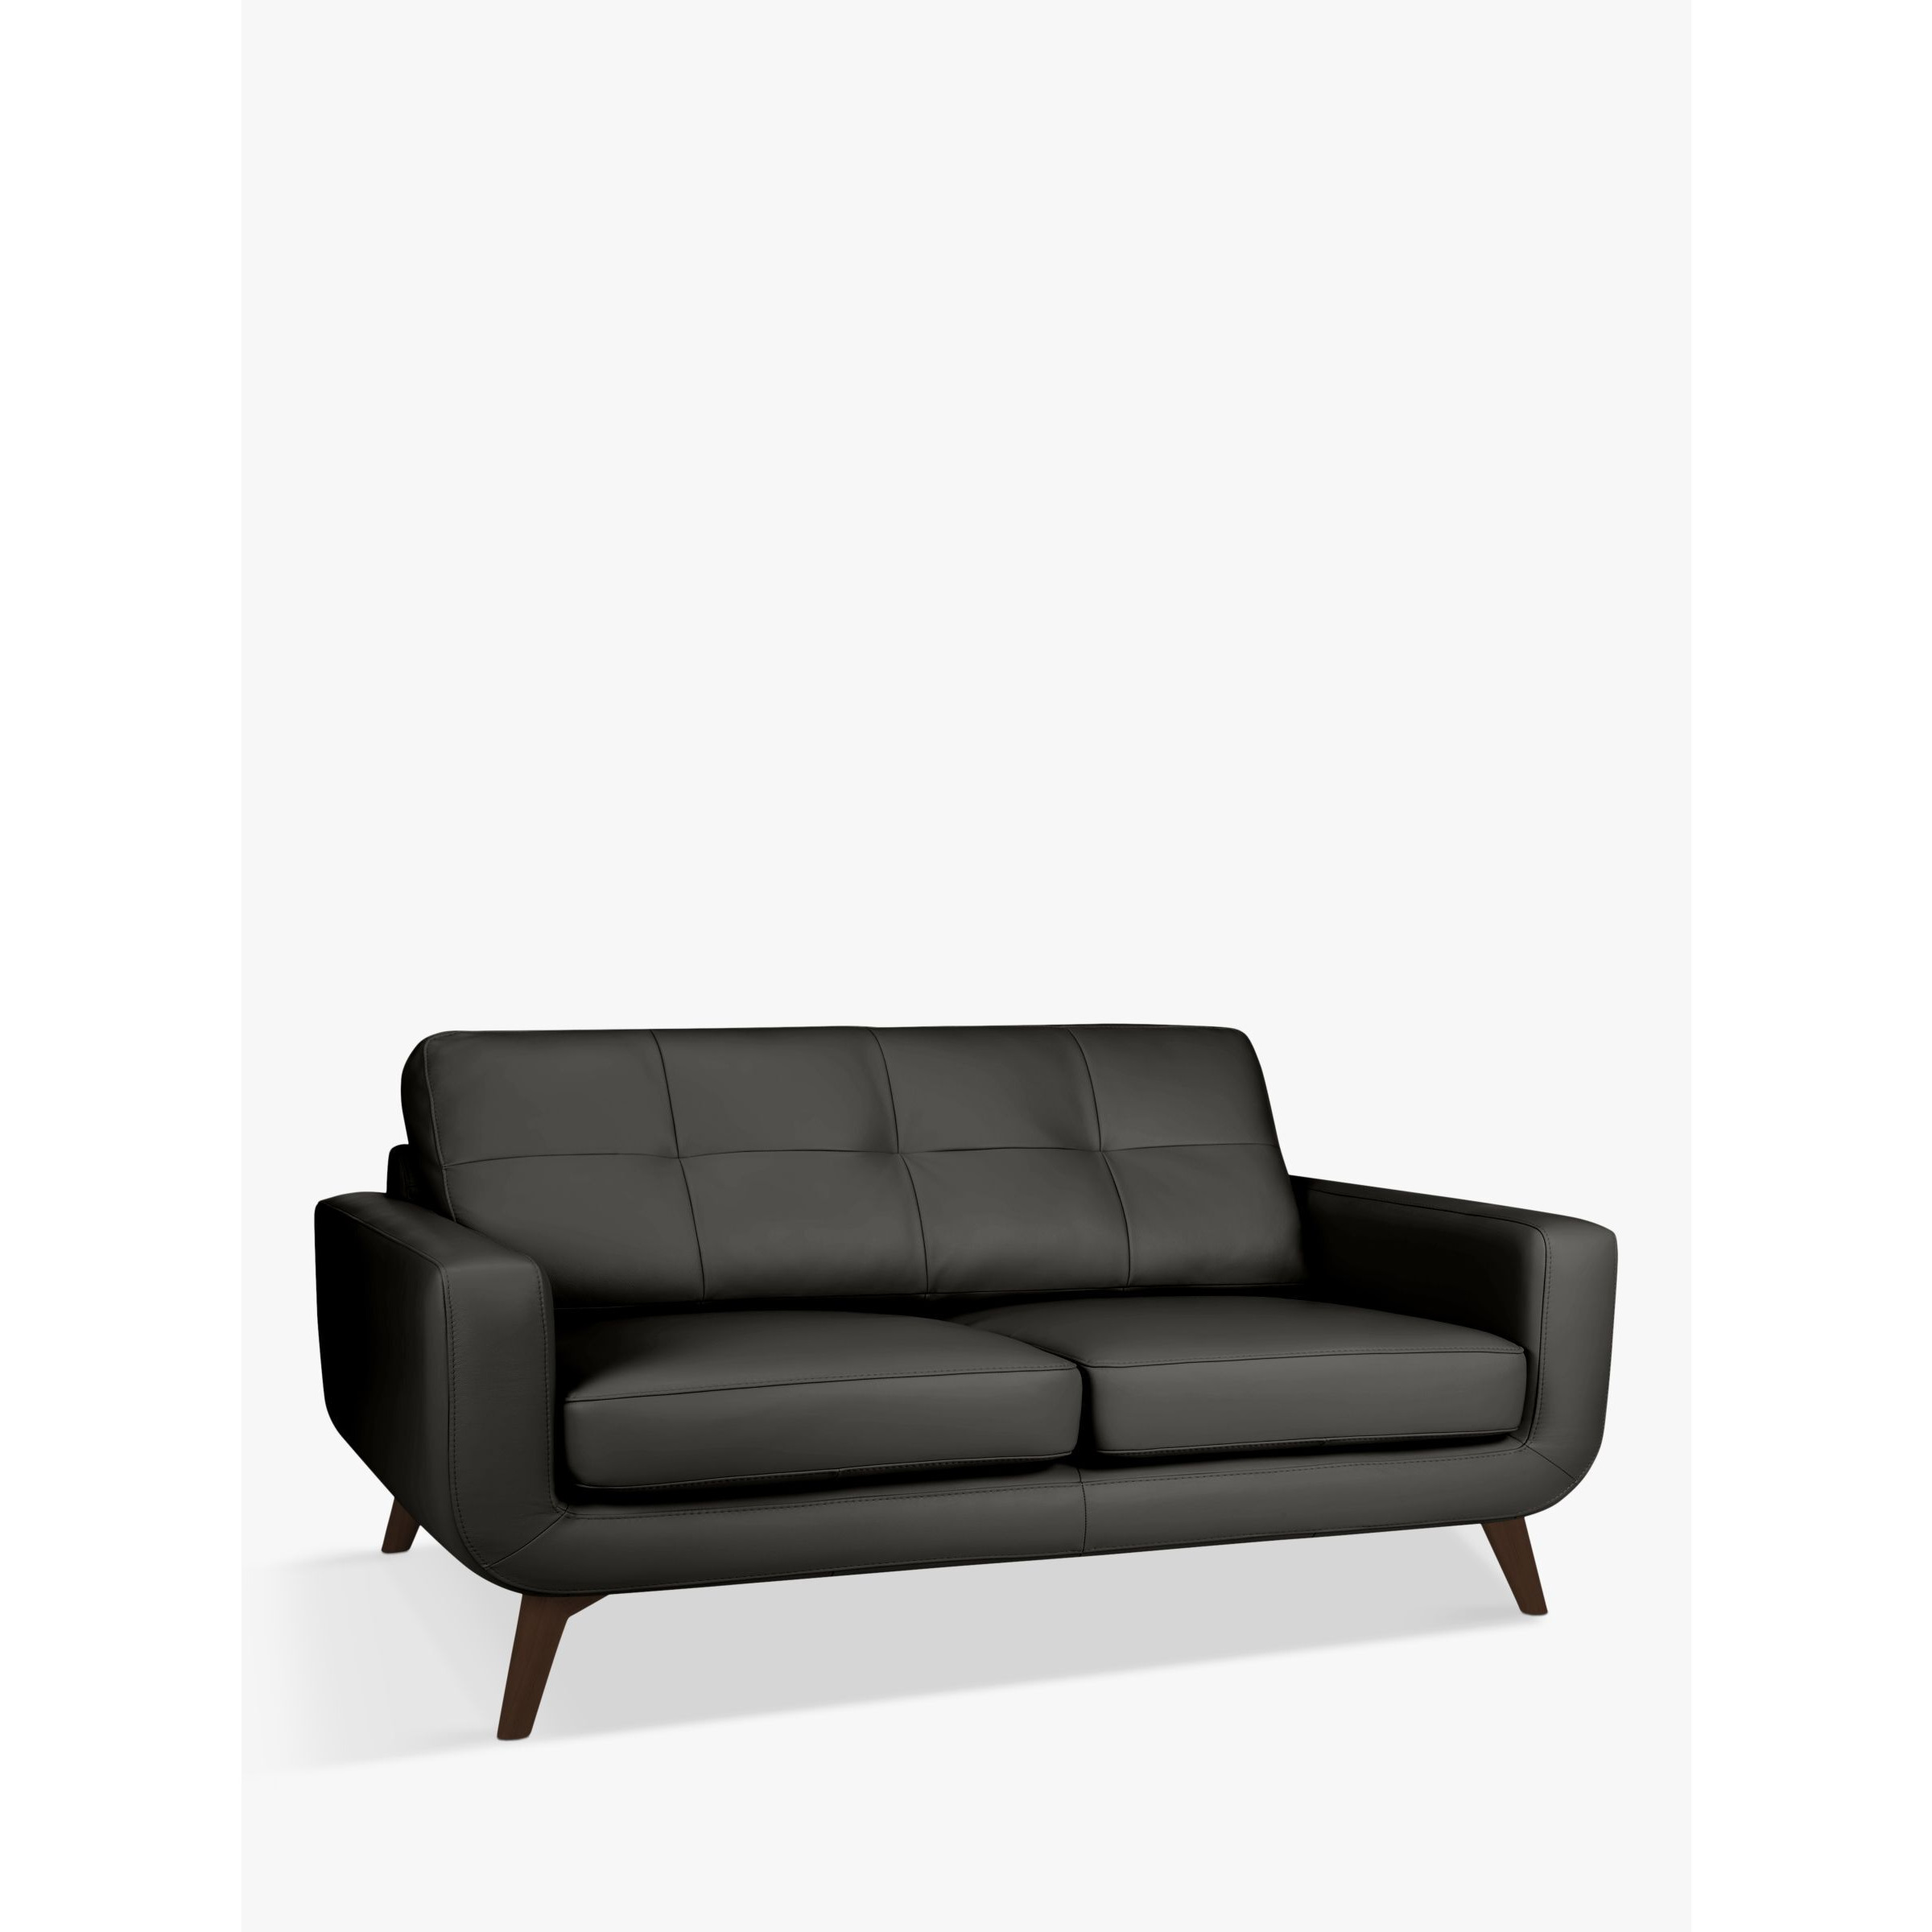 John Lewis Barbican Large 3 Seater Leather Sofa, Dark Leg - image 1